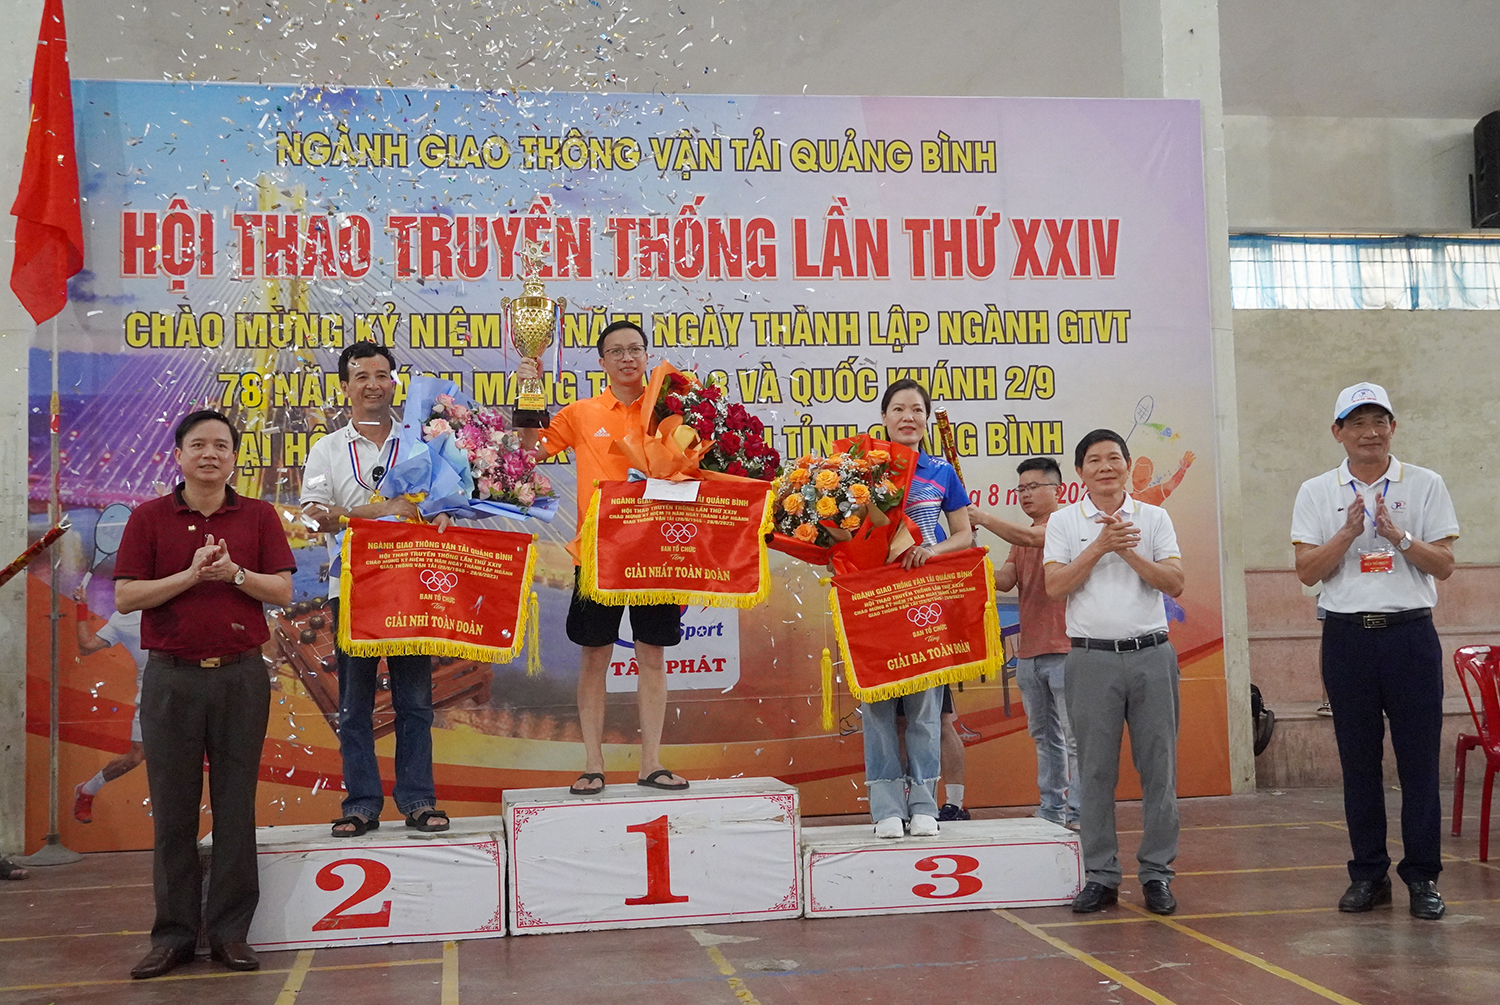 Lãnh đạo Sở GTVT trao giải cho các đội đạt giải nhất, nhì, ba toàn đoàn.